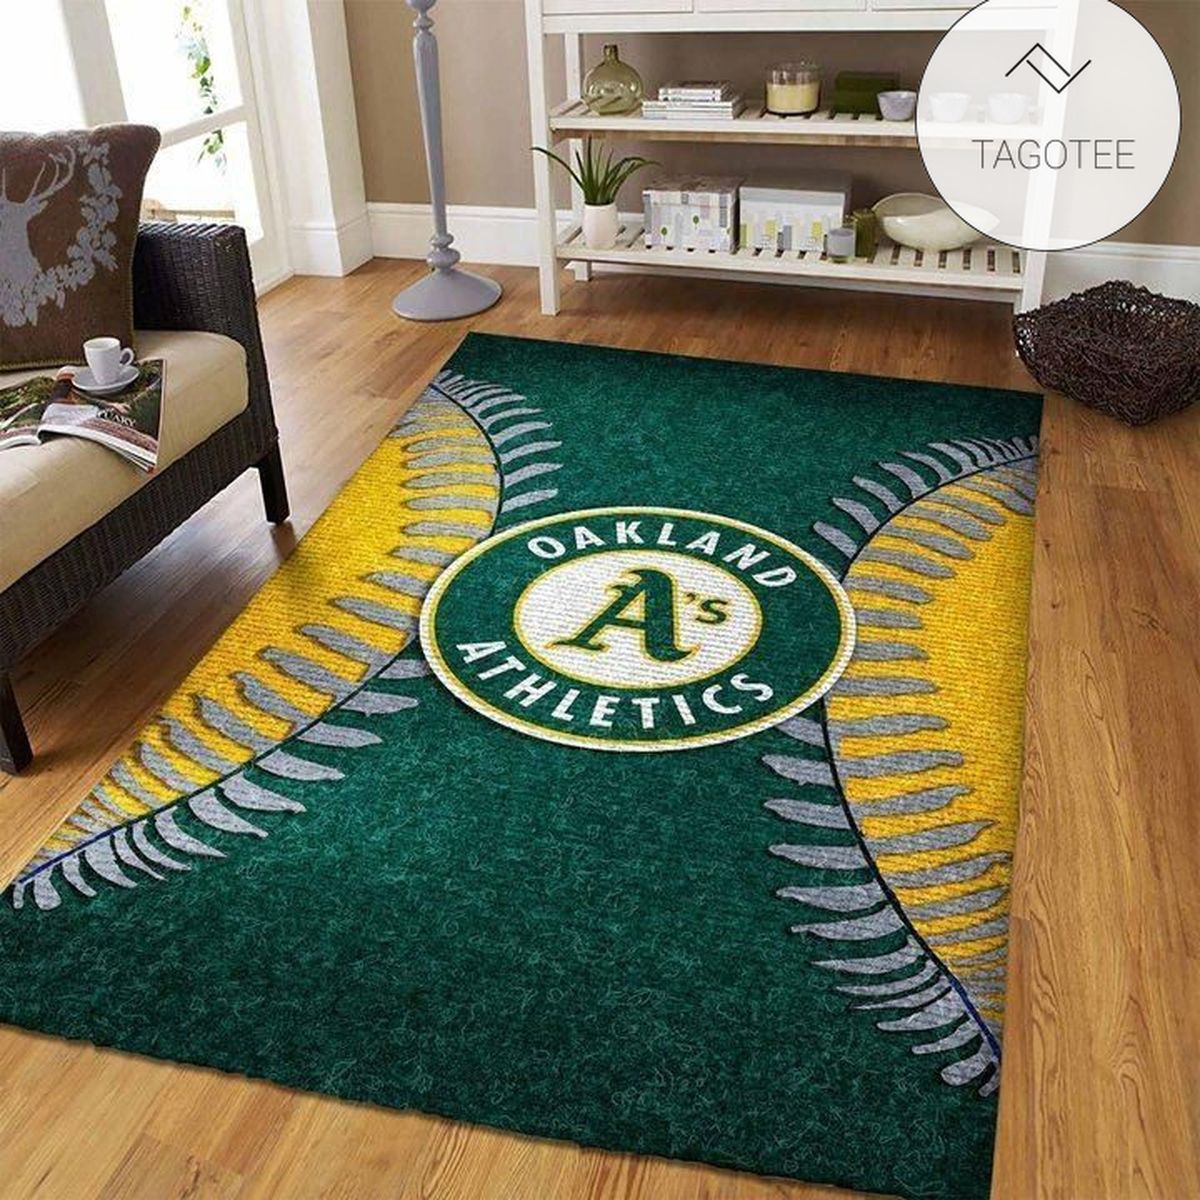 Oakland Athletics MLB Baseball Area Rug Baseball Floor Decor RCDD81F31119